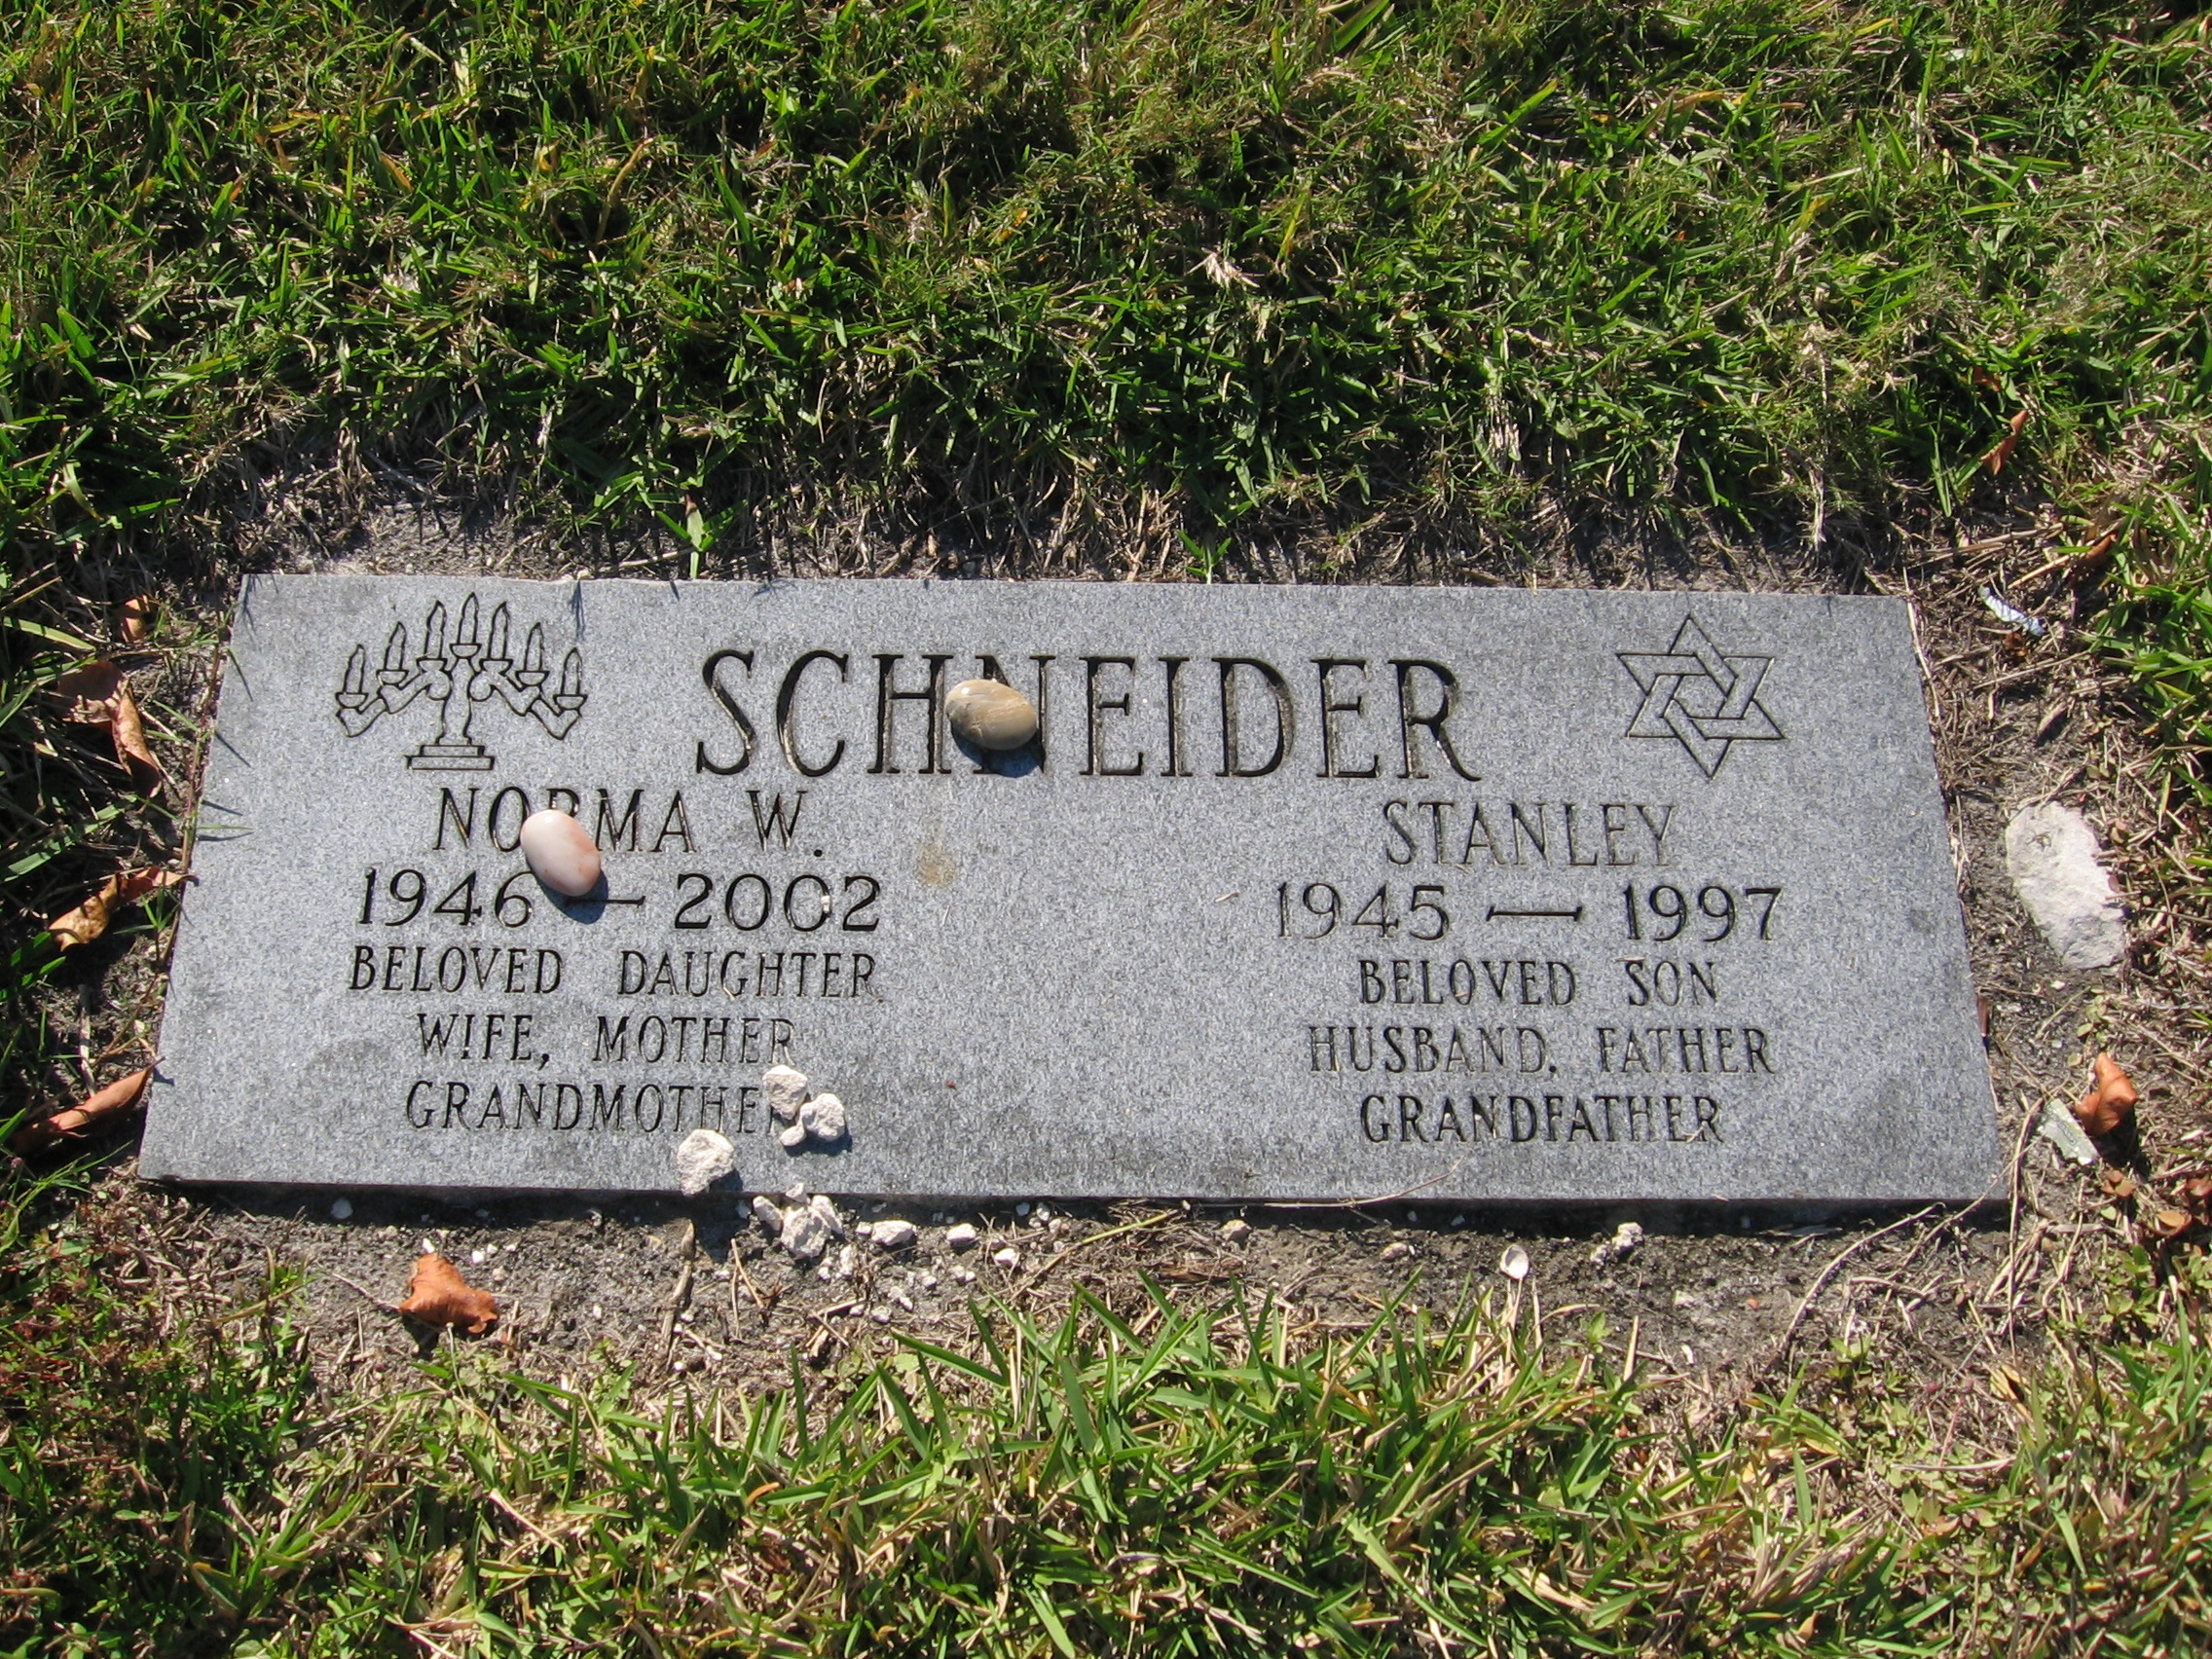 Stanley Schneider